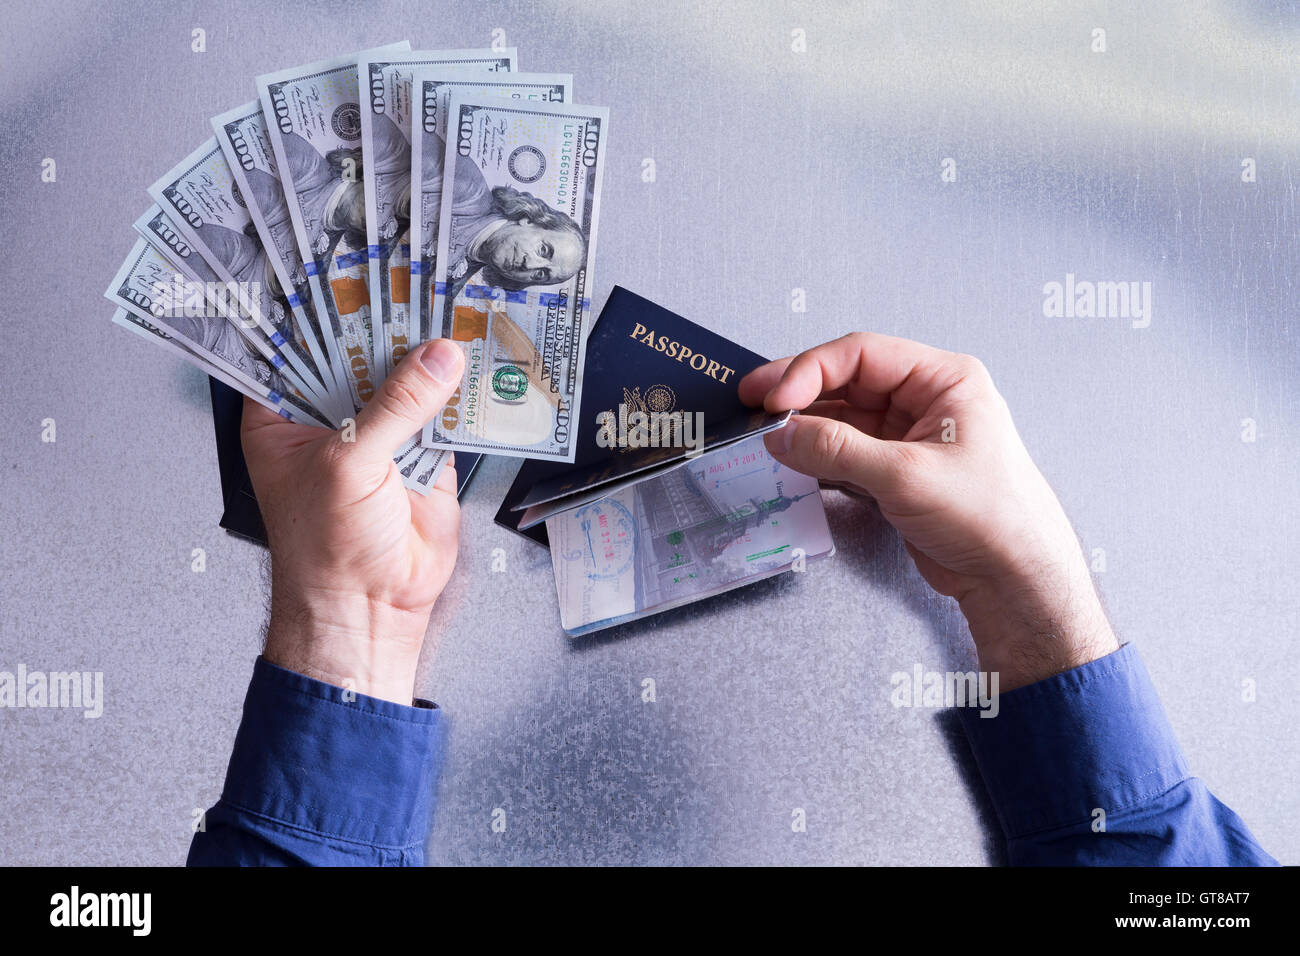 Le droit de passeport Concept - Human Hand Holding Fan de 100 US Dollar factures papier et passeport de voyage au-dessus d'un tableau blanc. Banque D'Images